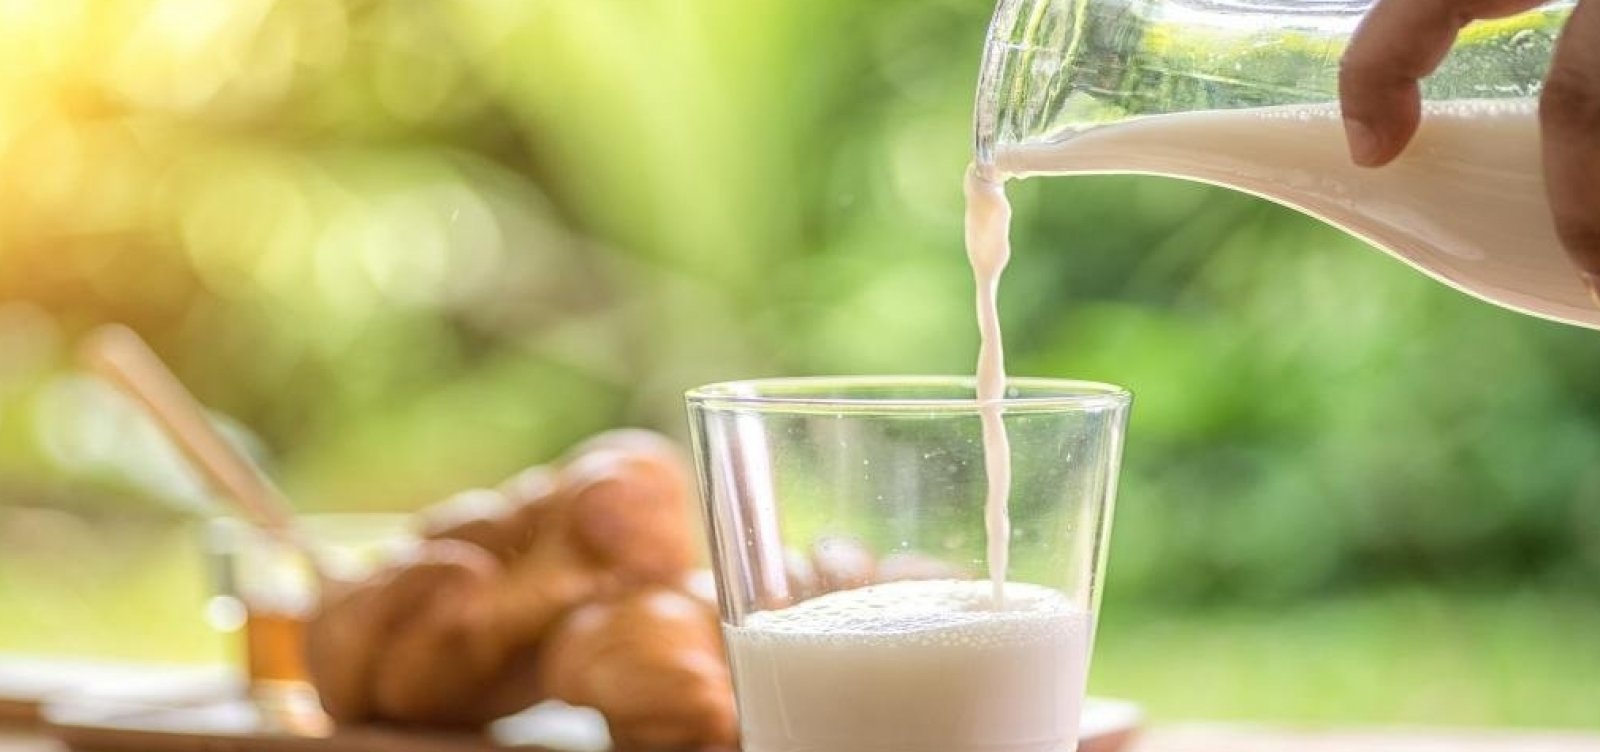 Aquisição de leite na Bahia registra aumento anual de 18,6%